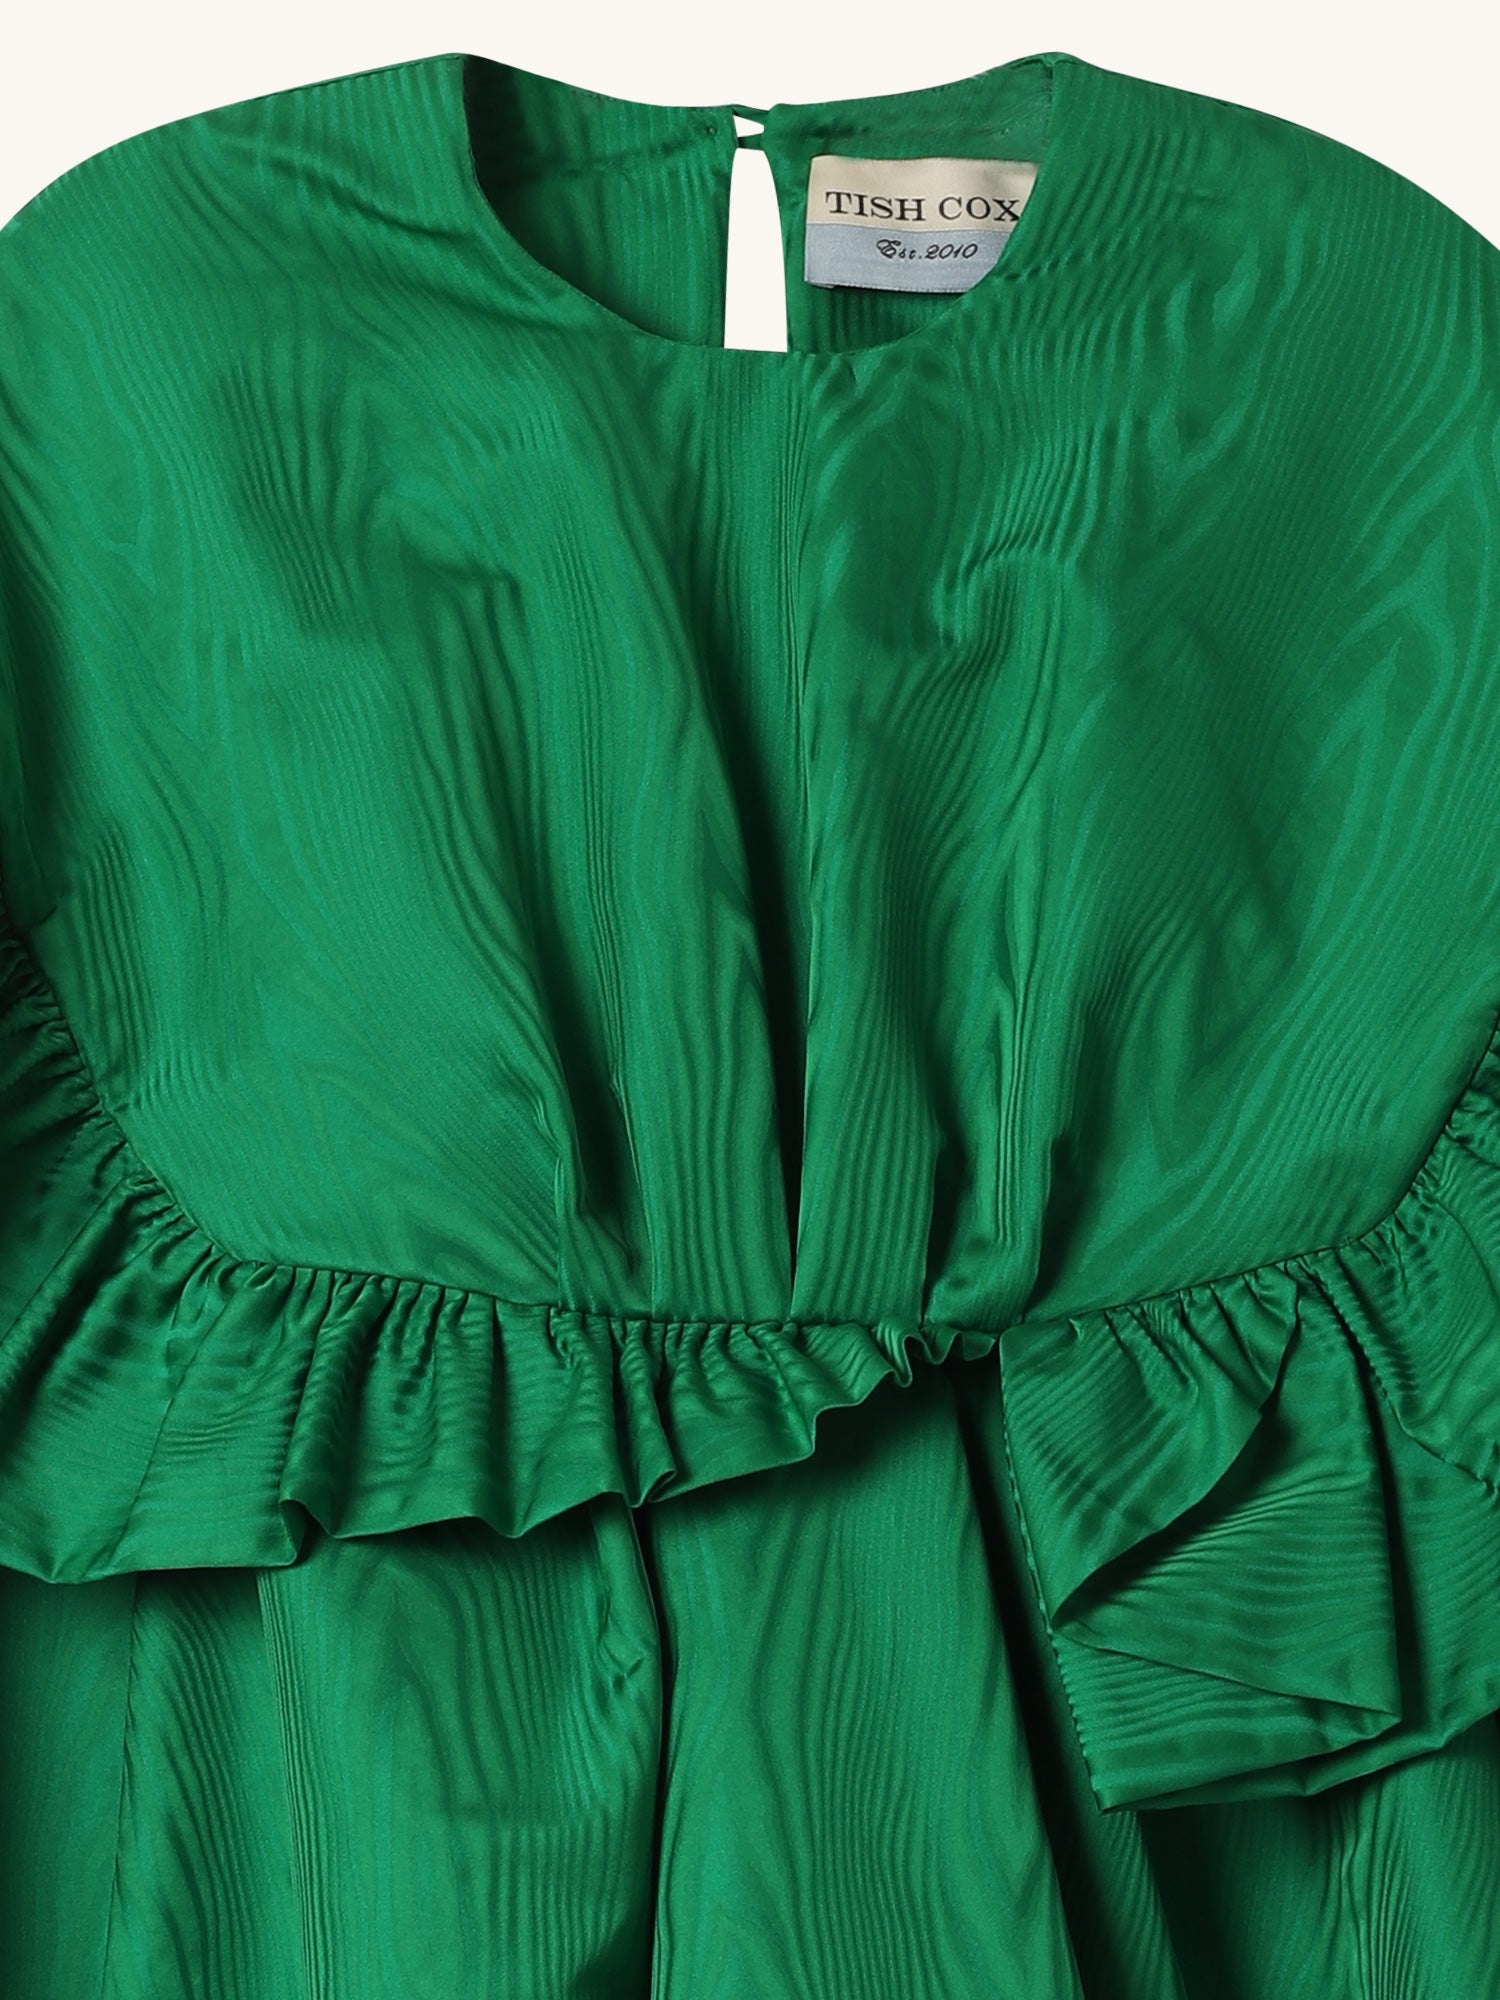 Tiffany Dress in Emerald Moire